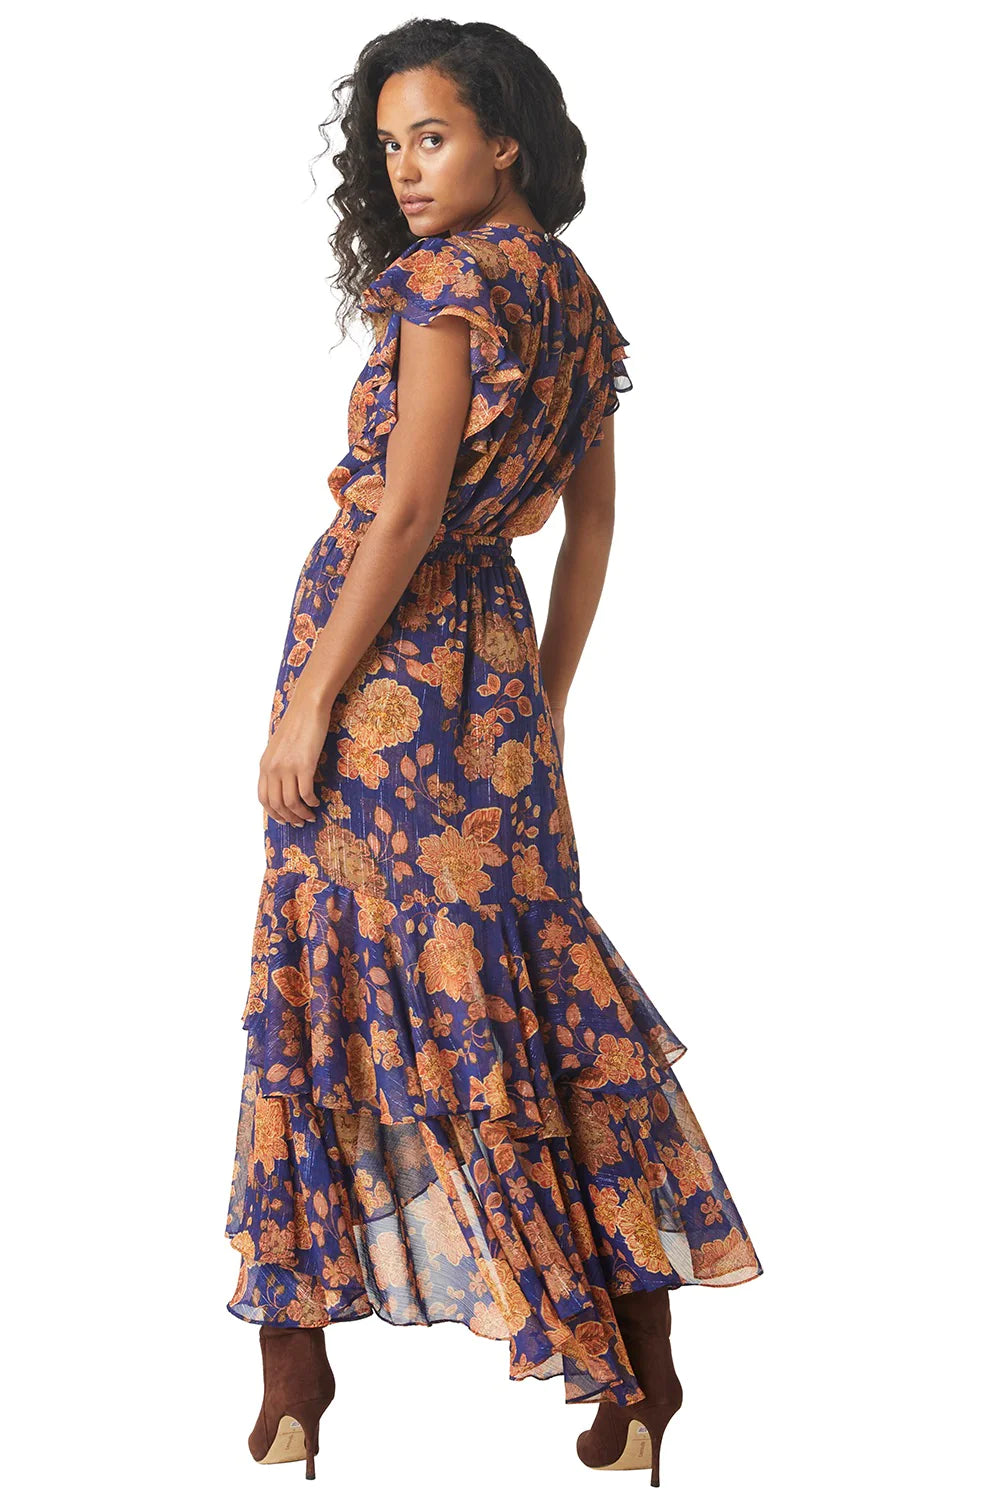 Misa Seva Maxi Skirt in Blue Marigold Print